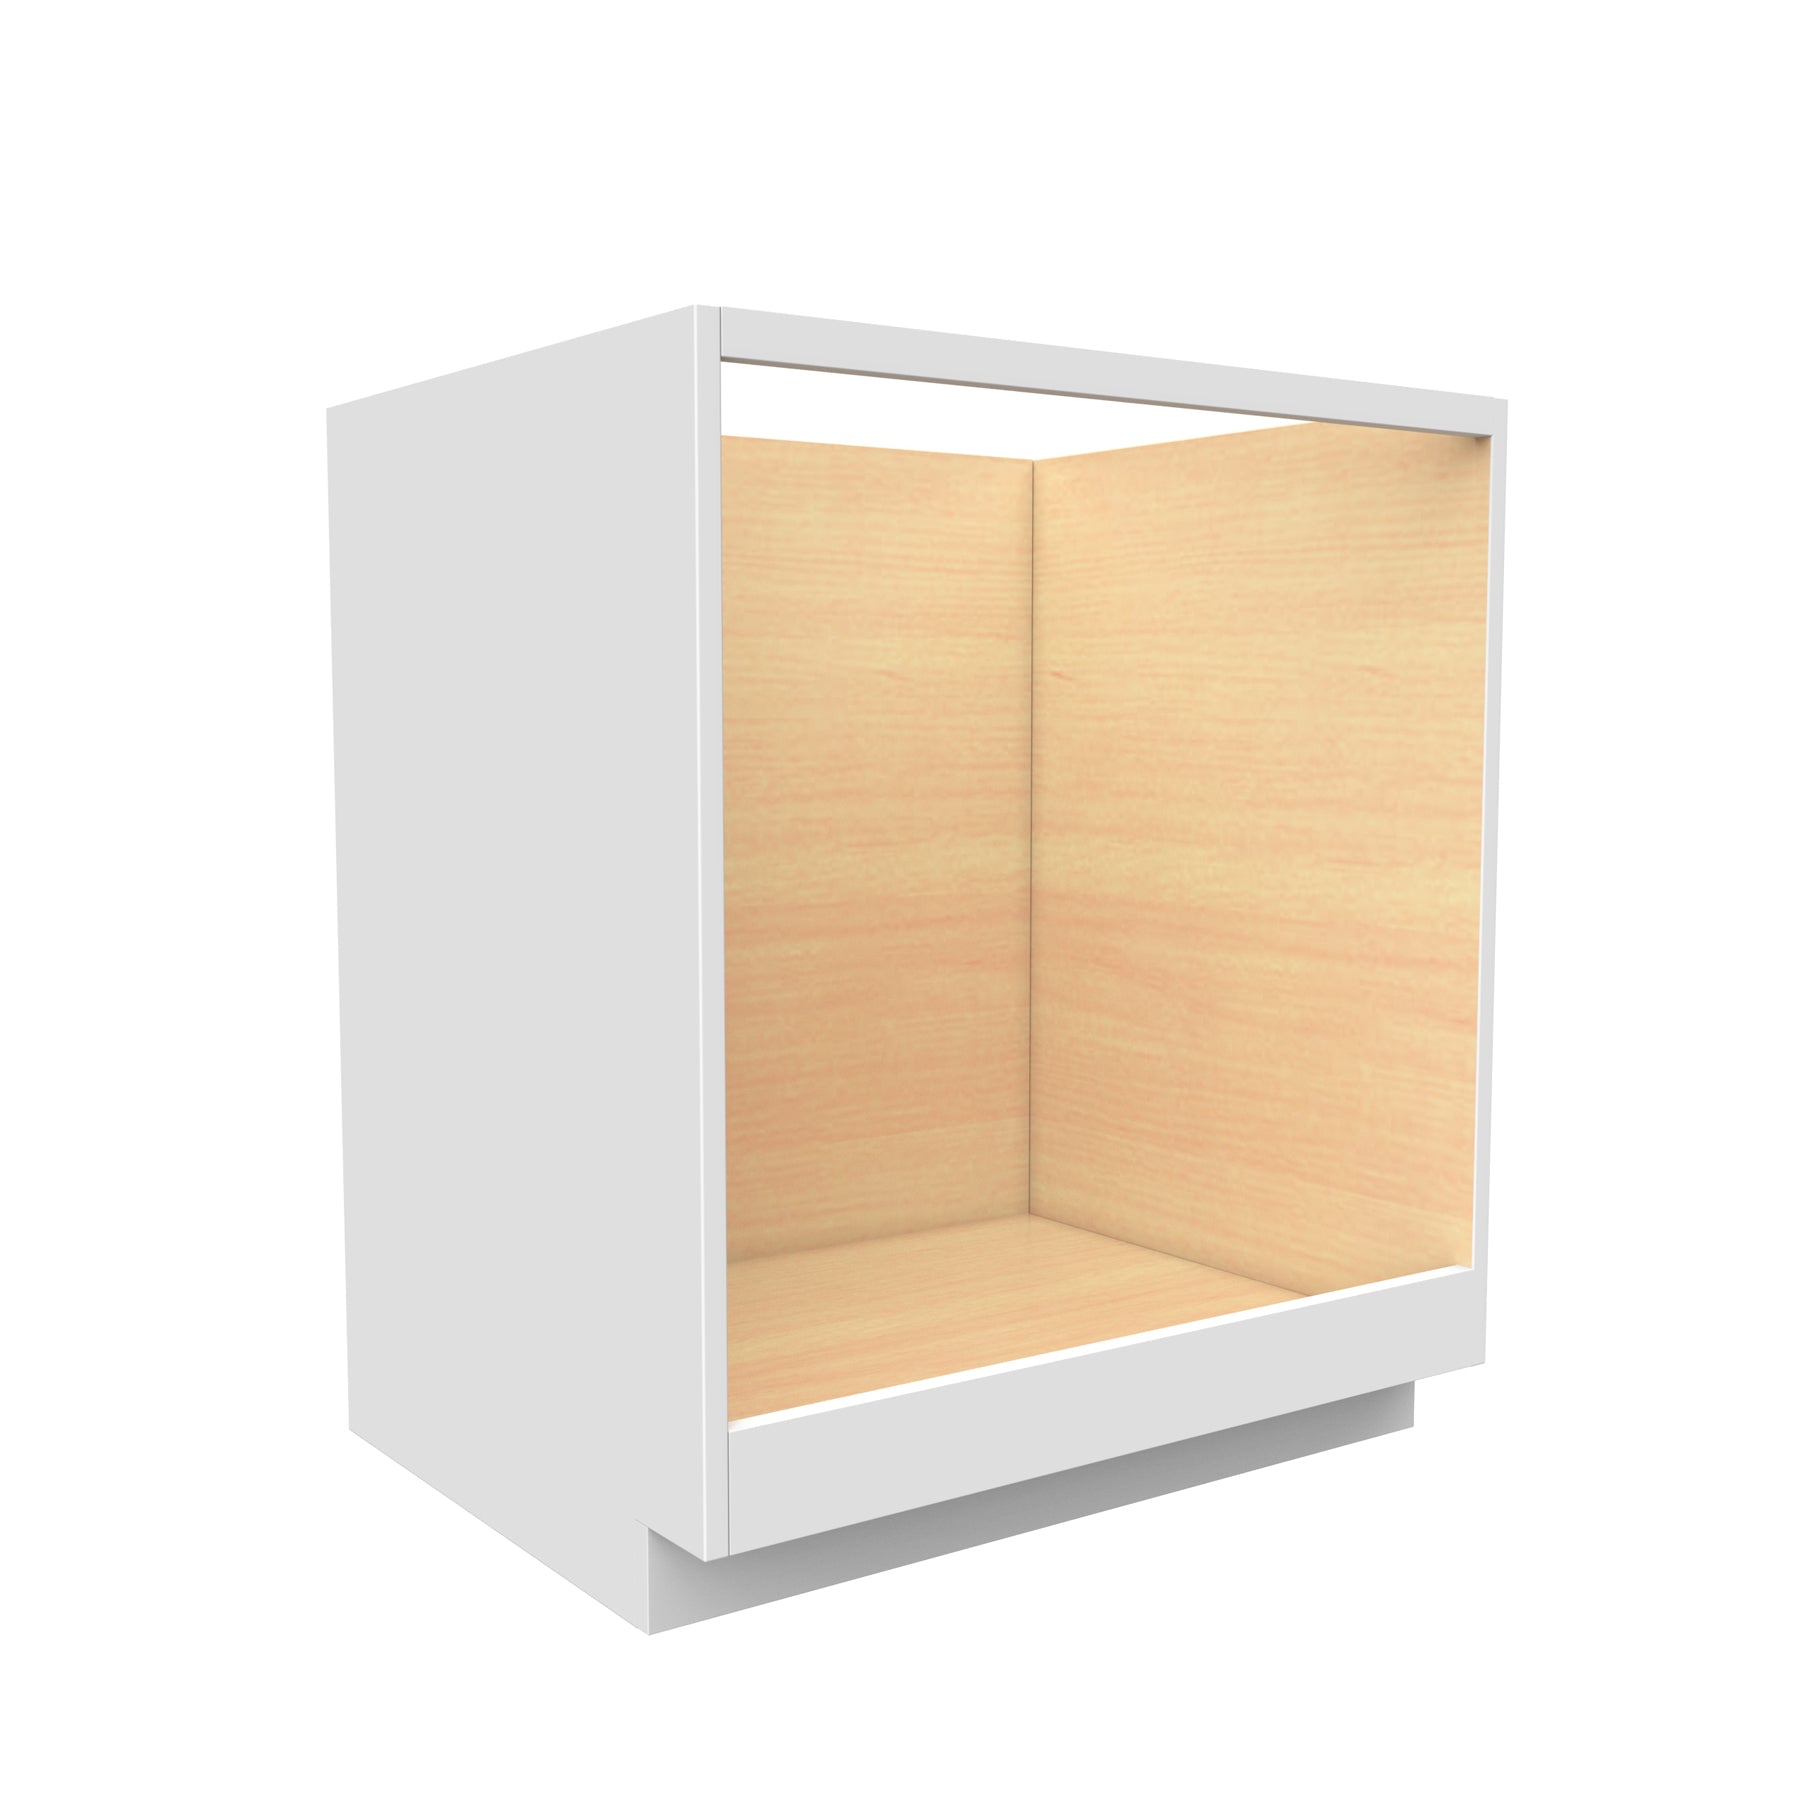 RTA - Fashion White - Oven Base Cabinet | 30"W x 34.5"H x 24"D